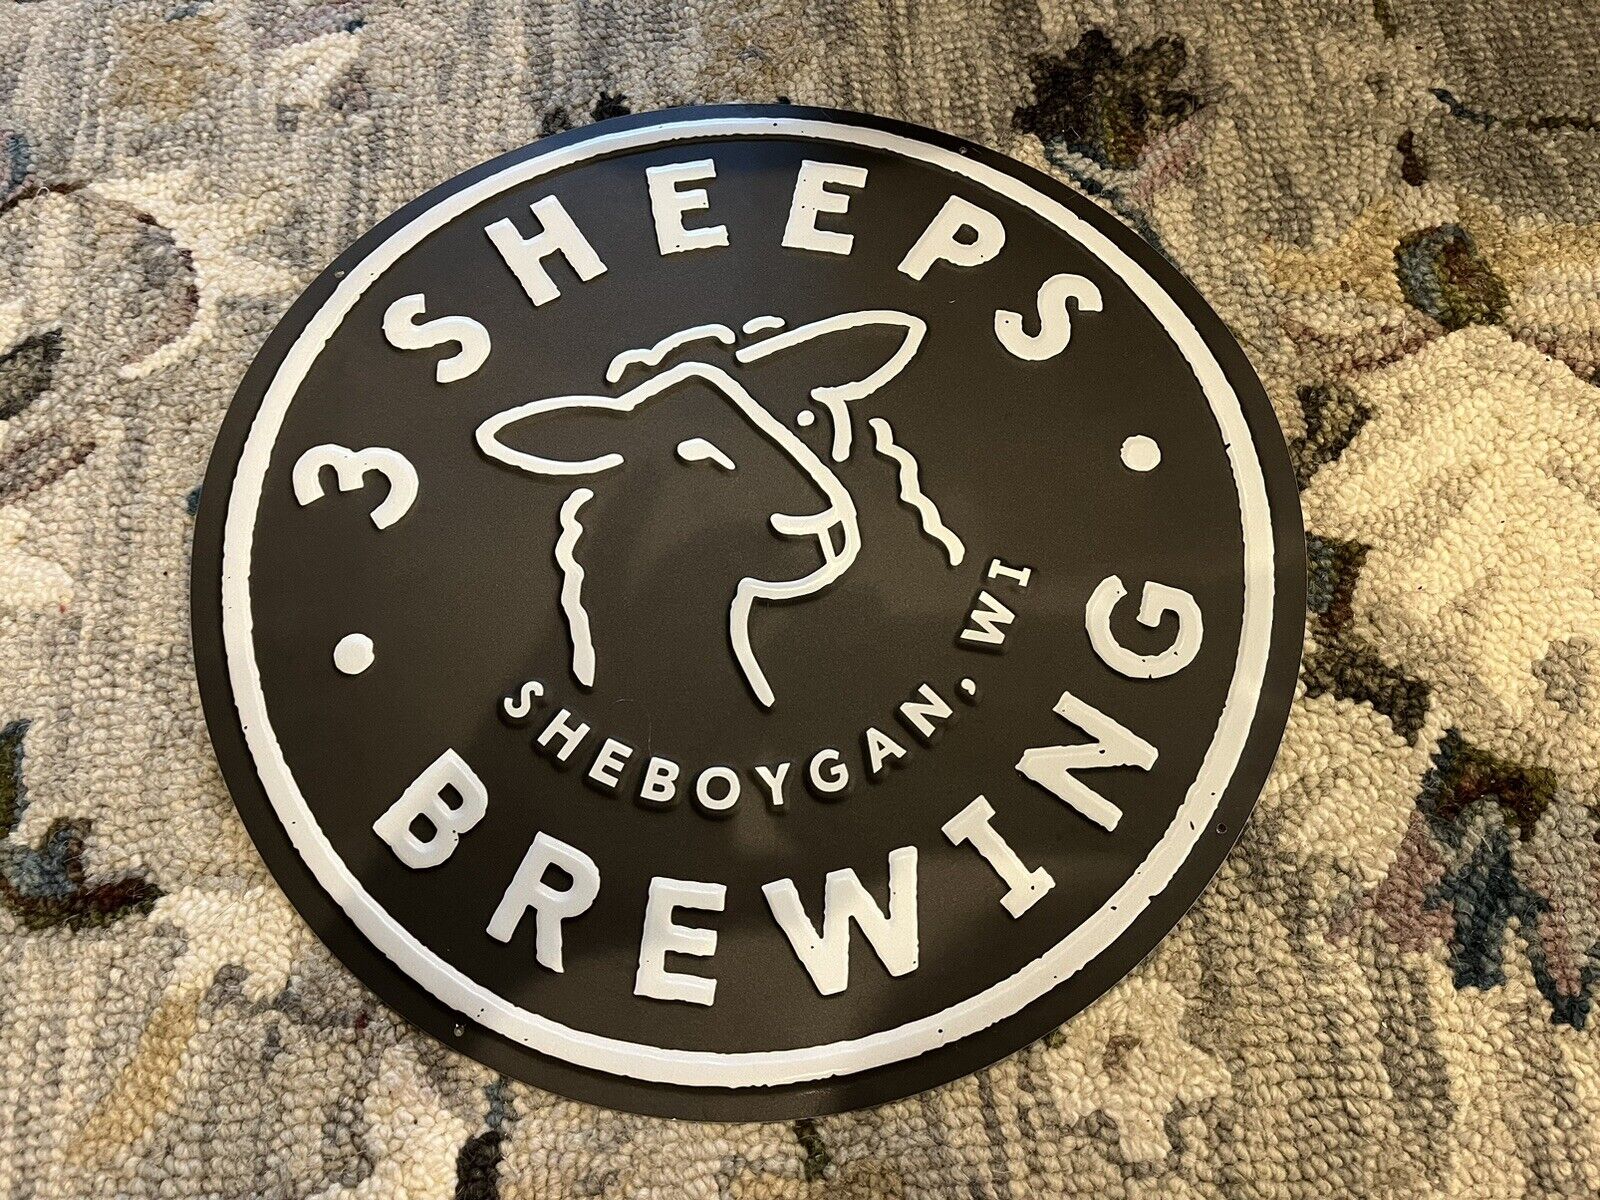 3 SHEEPS BREWING BEER SIGN - SHEBOYGAN, WI 17.5” ADVERTISING SIGN MAN CAVE BAR